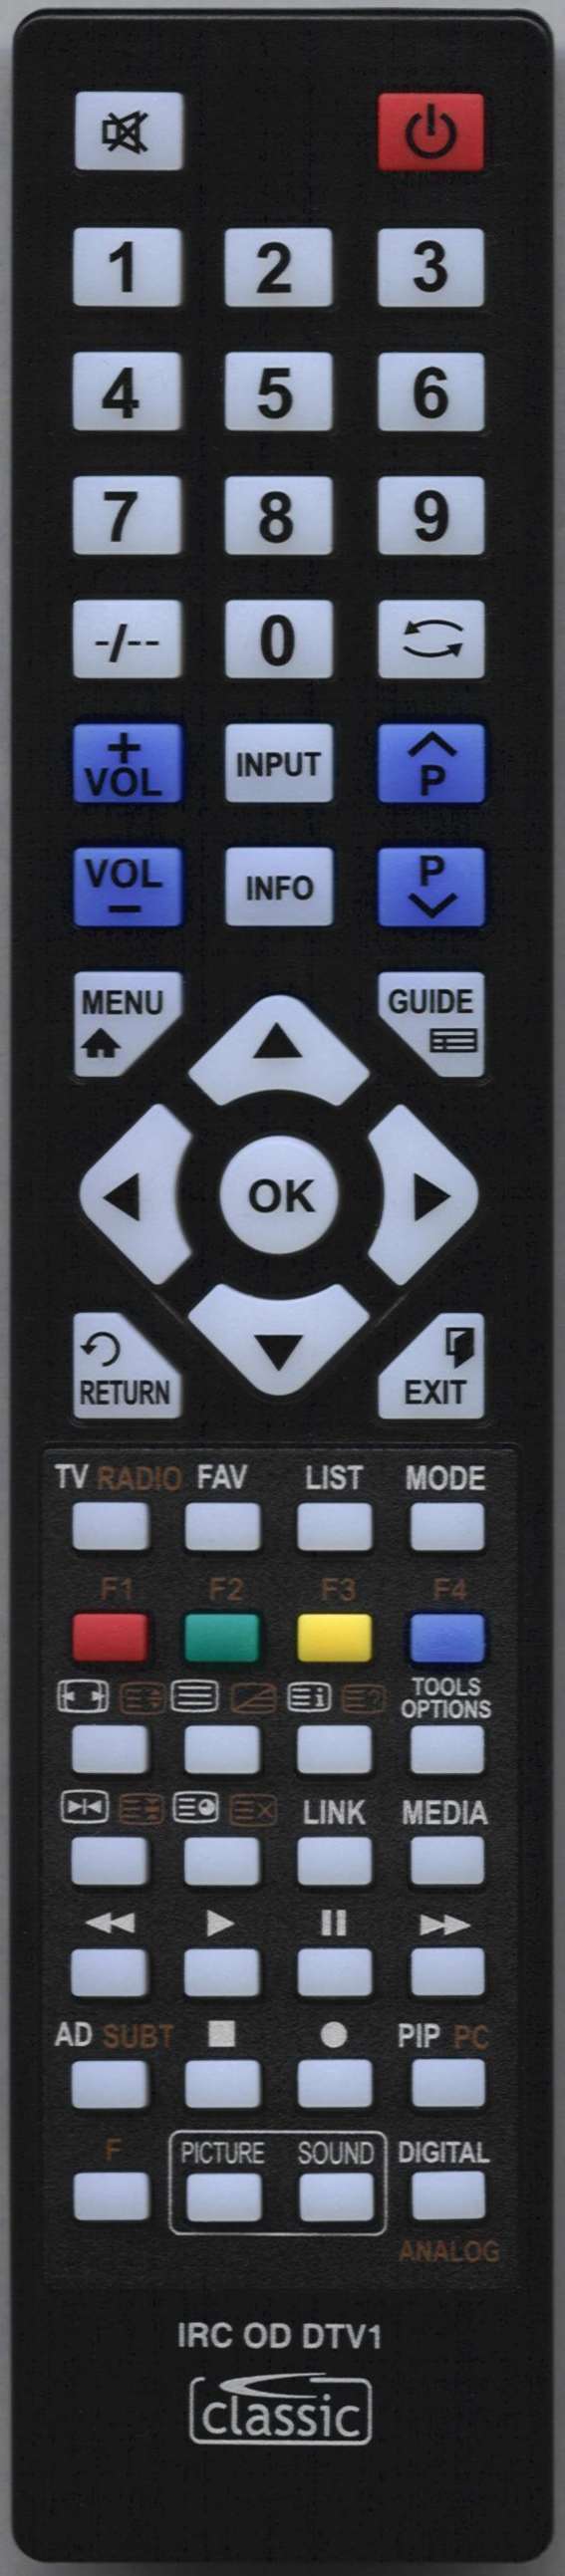 ORION RC 2600 Remote Control Alternative